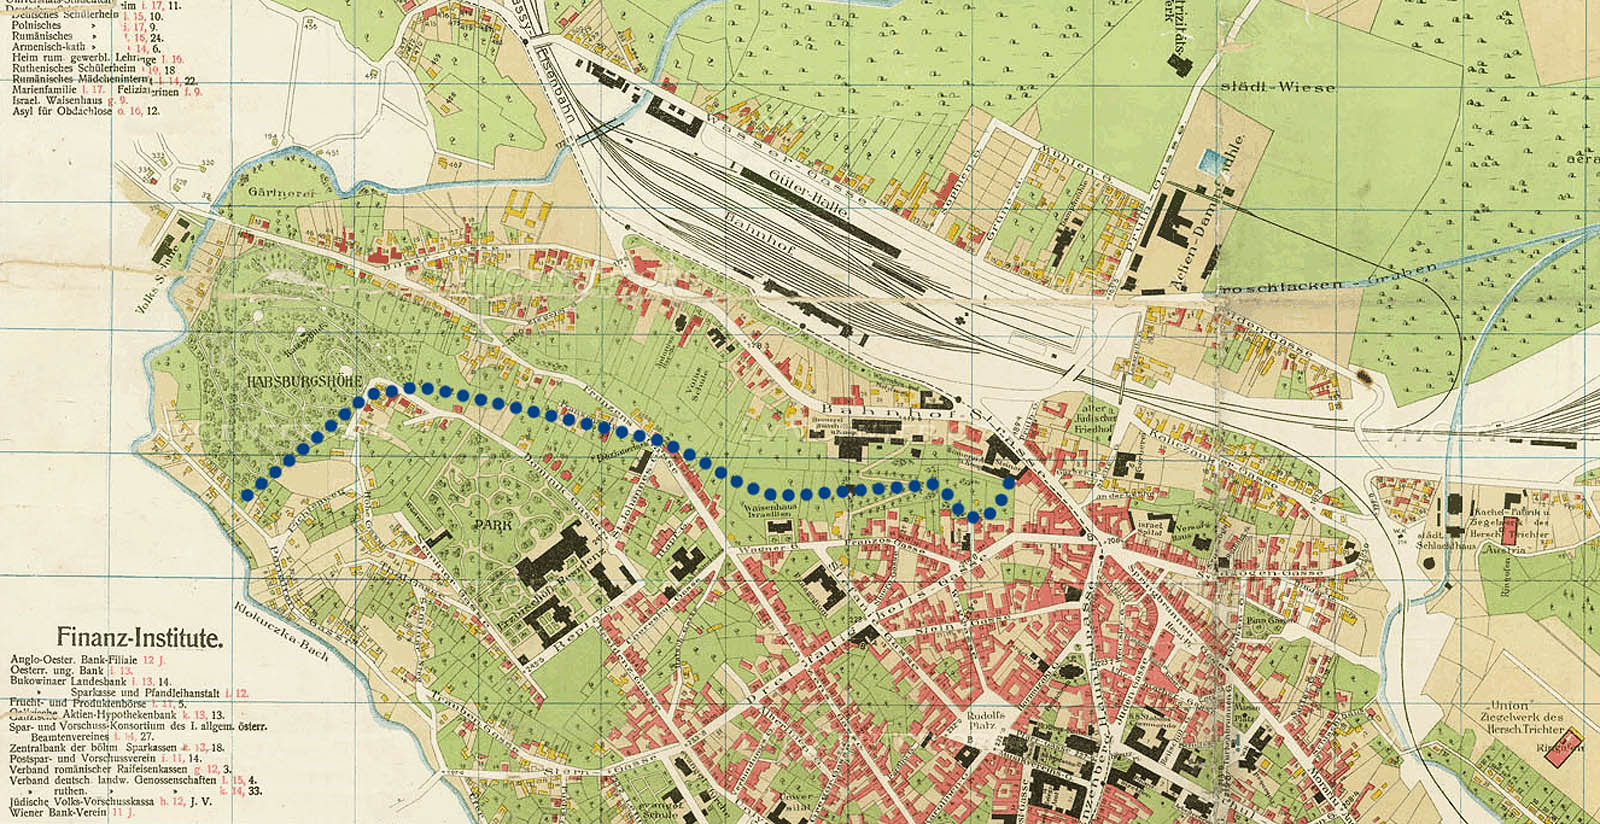 Tmavě modrými puntíky je zakreslena odhadnutá trasa hlavních štol do mapy z roku 1911, kdy většinu dnešních továrních čtvrtí ještě pokrývaly zahrady. V mapce je též dobře patrná trasa tramvaje od nádraží do centra města.